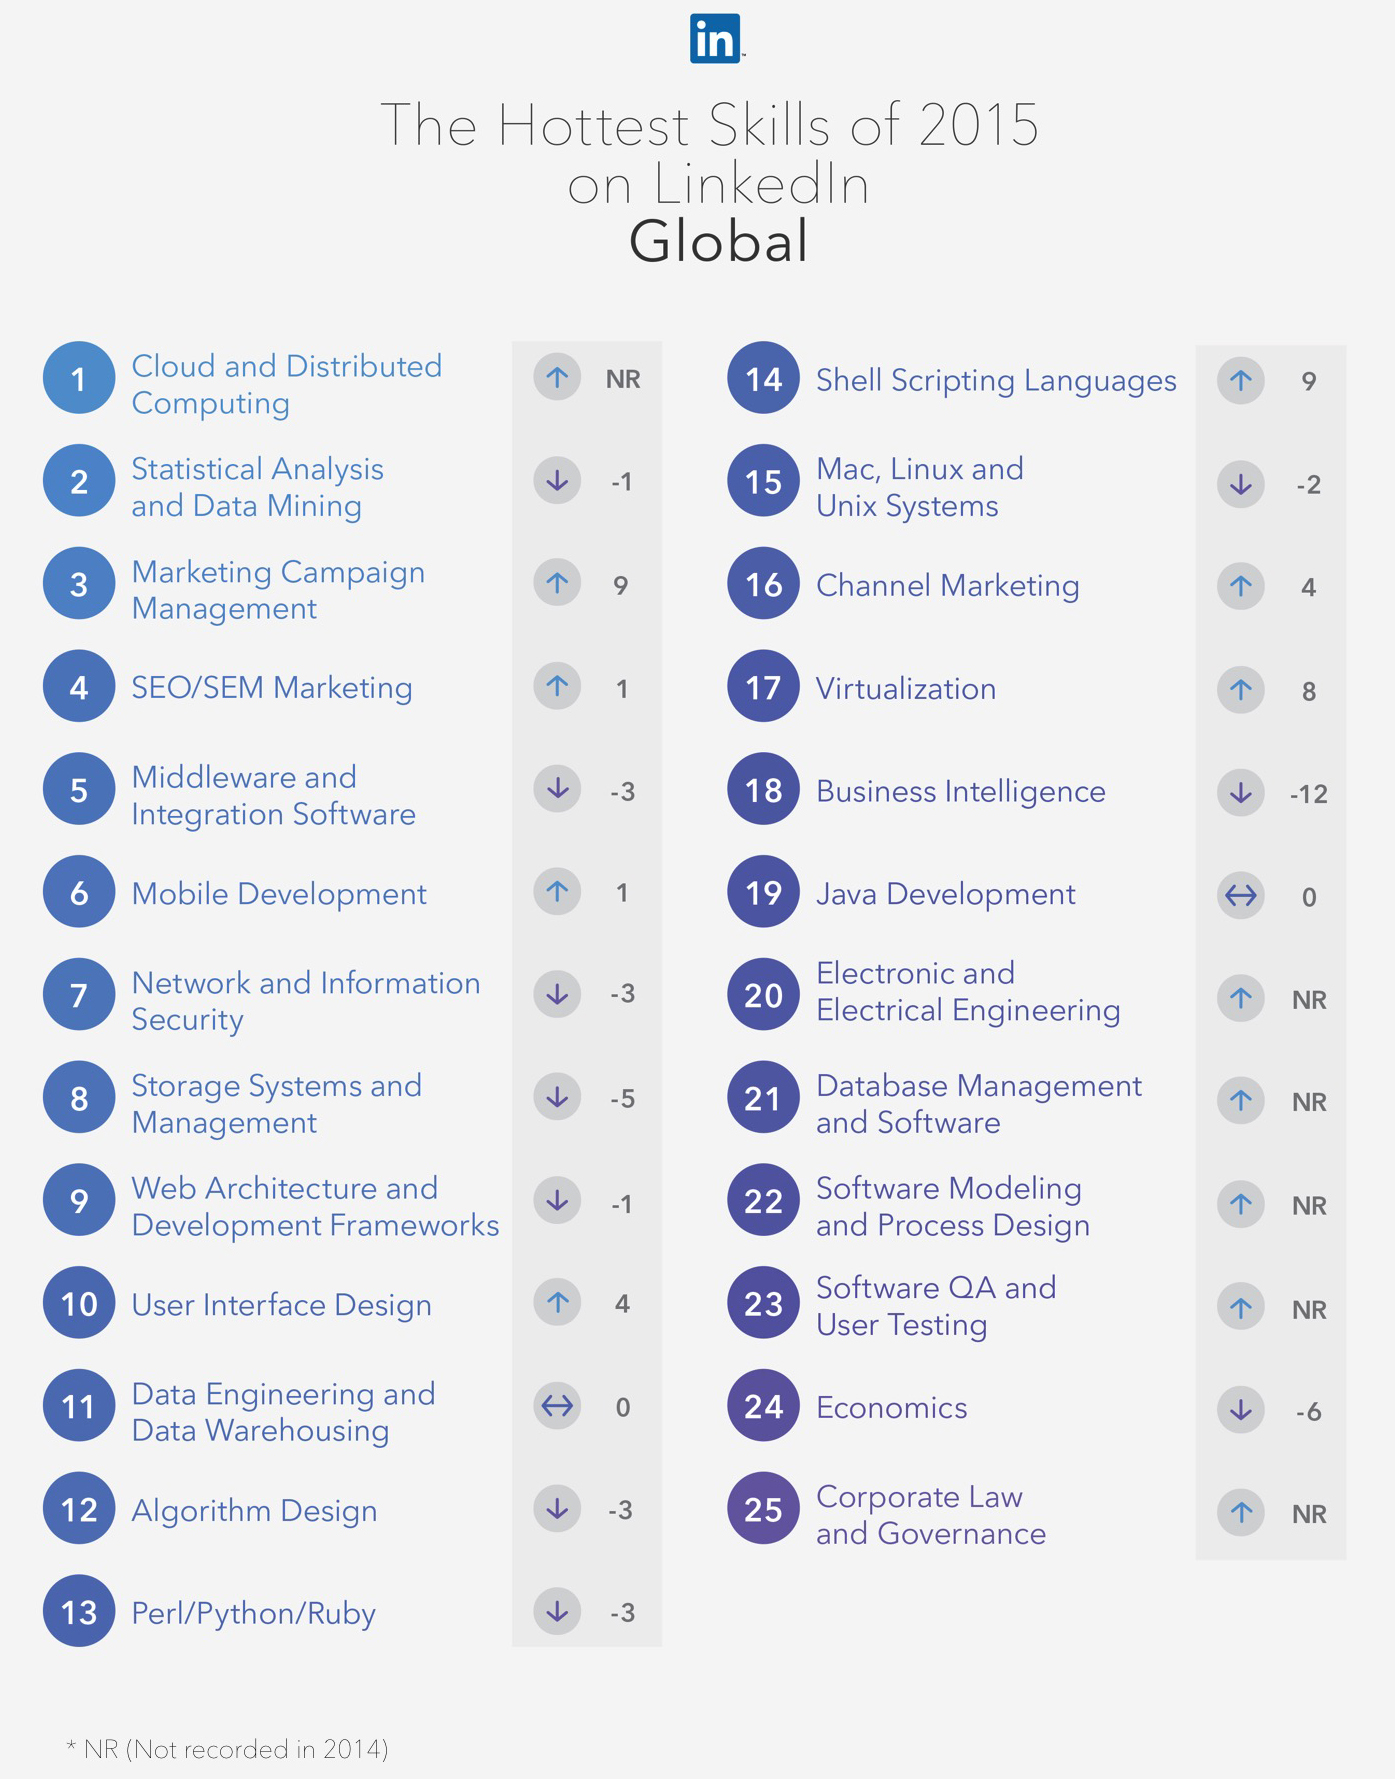 linkedIn-hot-skills-2015-global